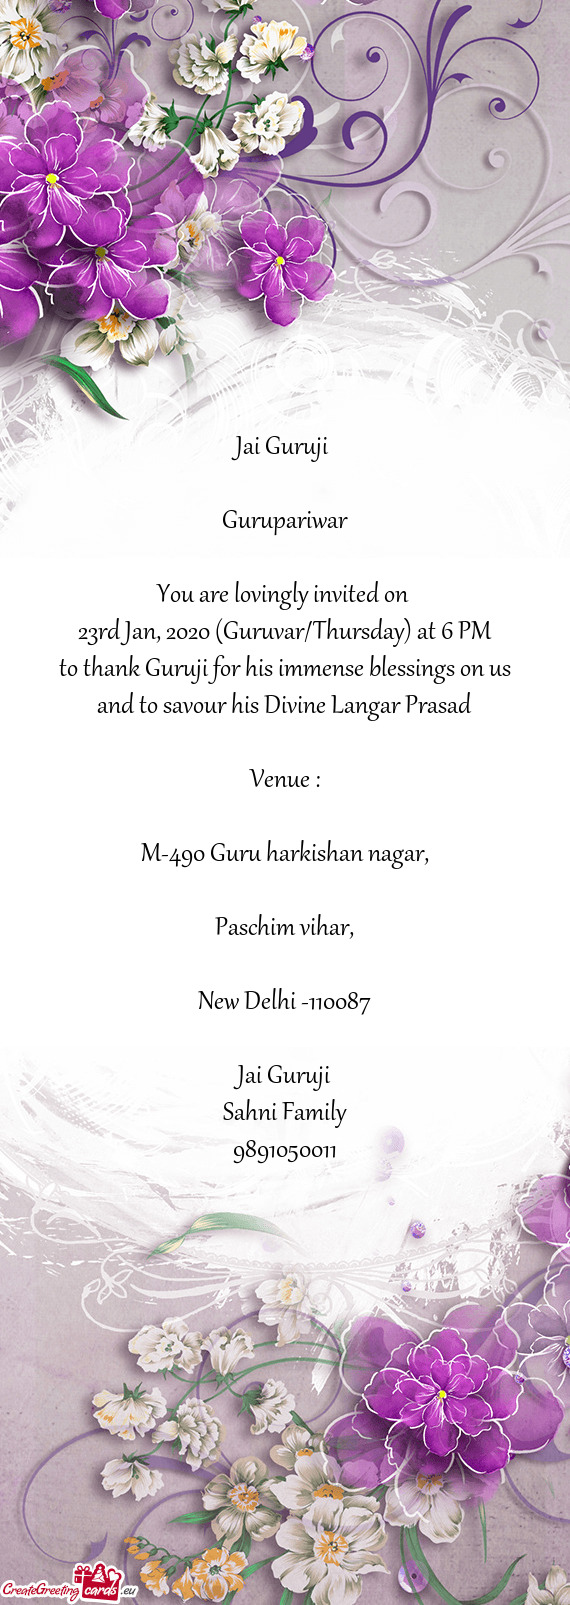 23rd Jan, 2020 (Guruvar/Thursday) at 6 PM